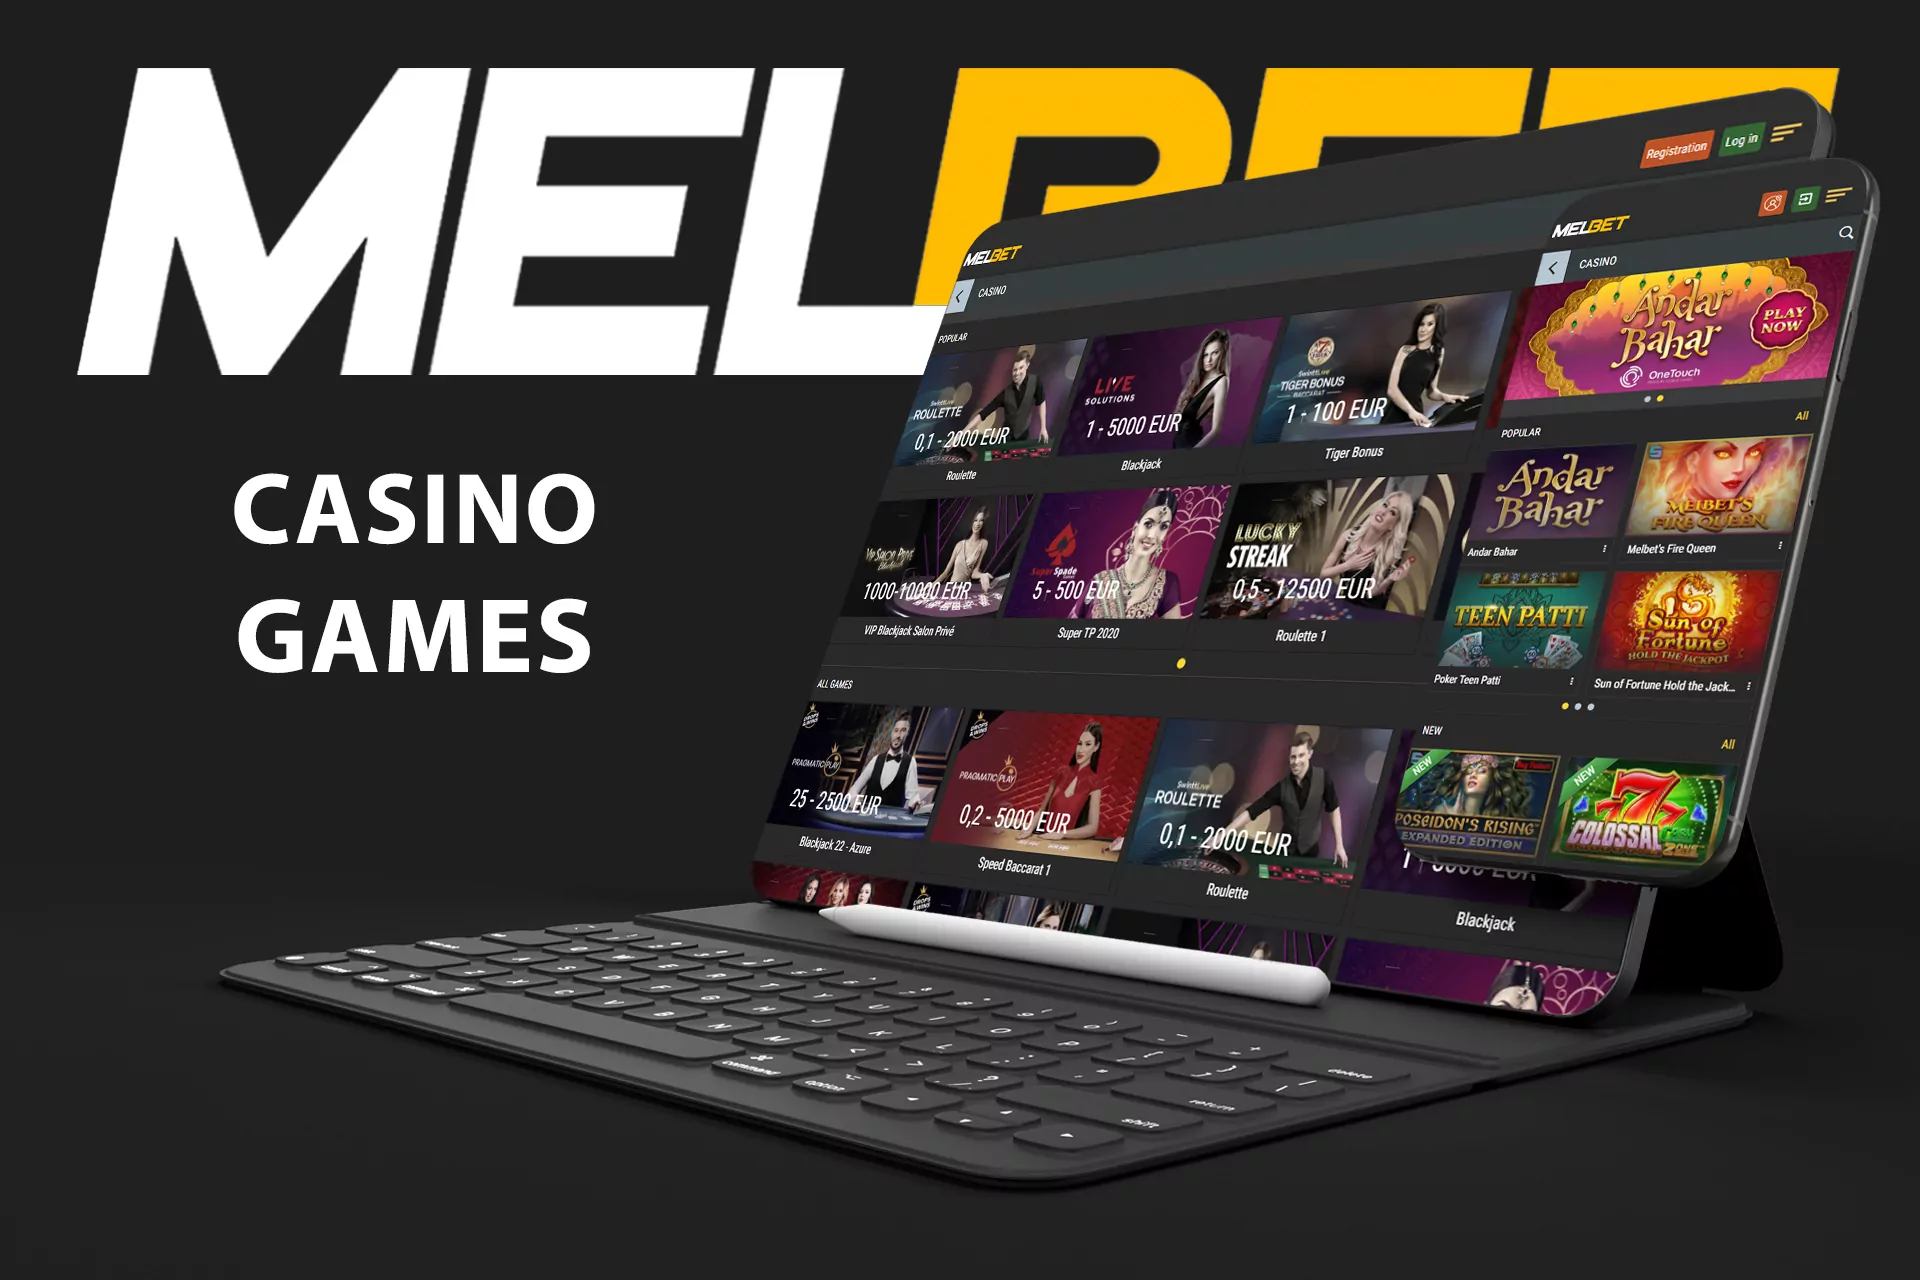 Melbet online casino has over 7,000 games.